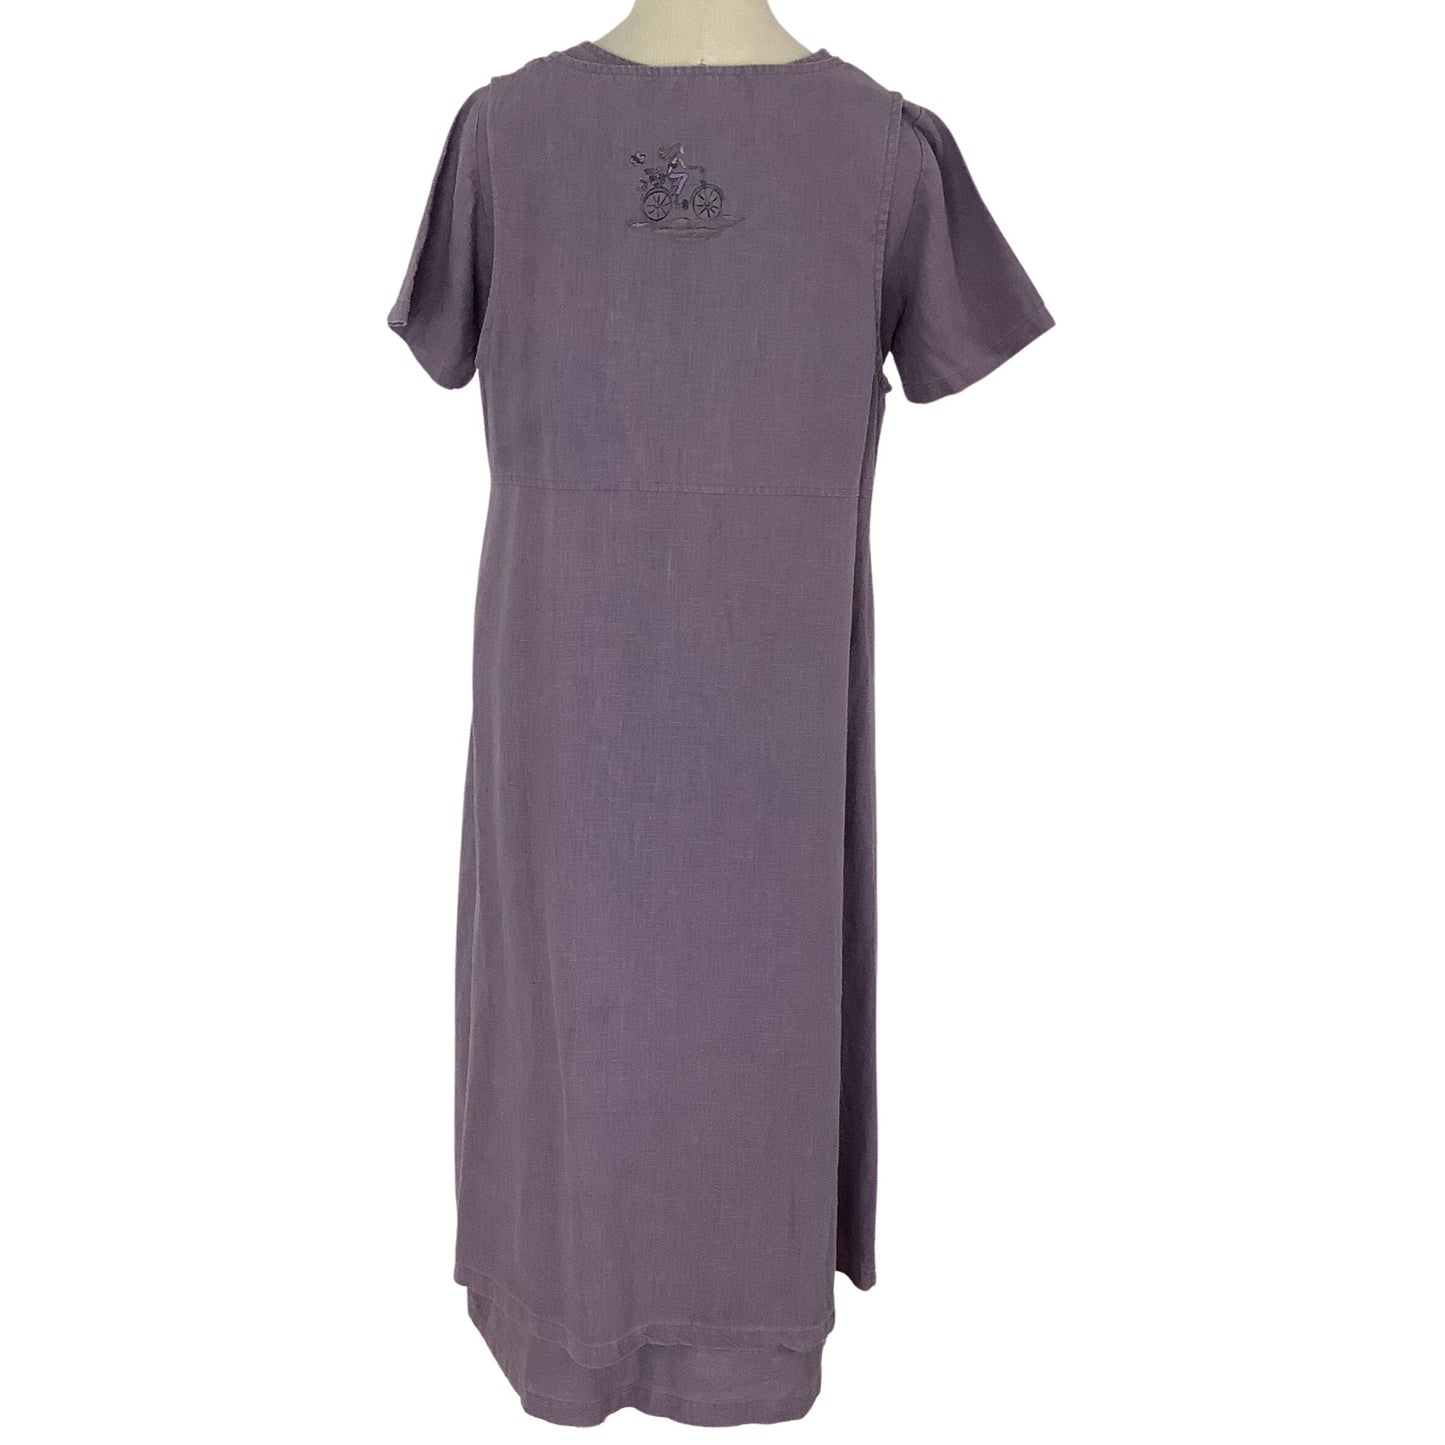 Vintage Linen Dress Outfit Medium / Purple / Vintage 1970s